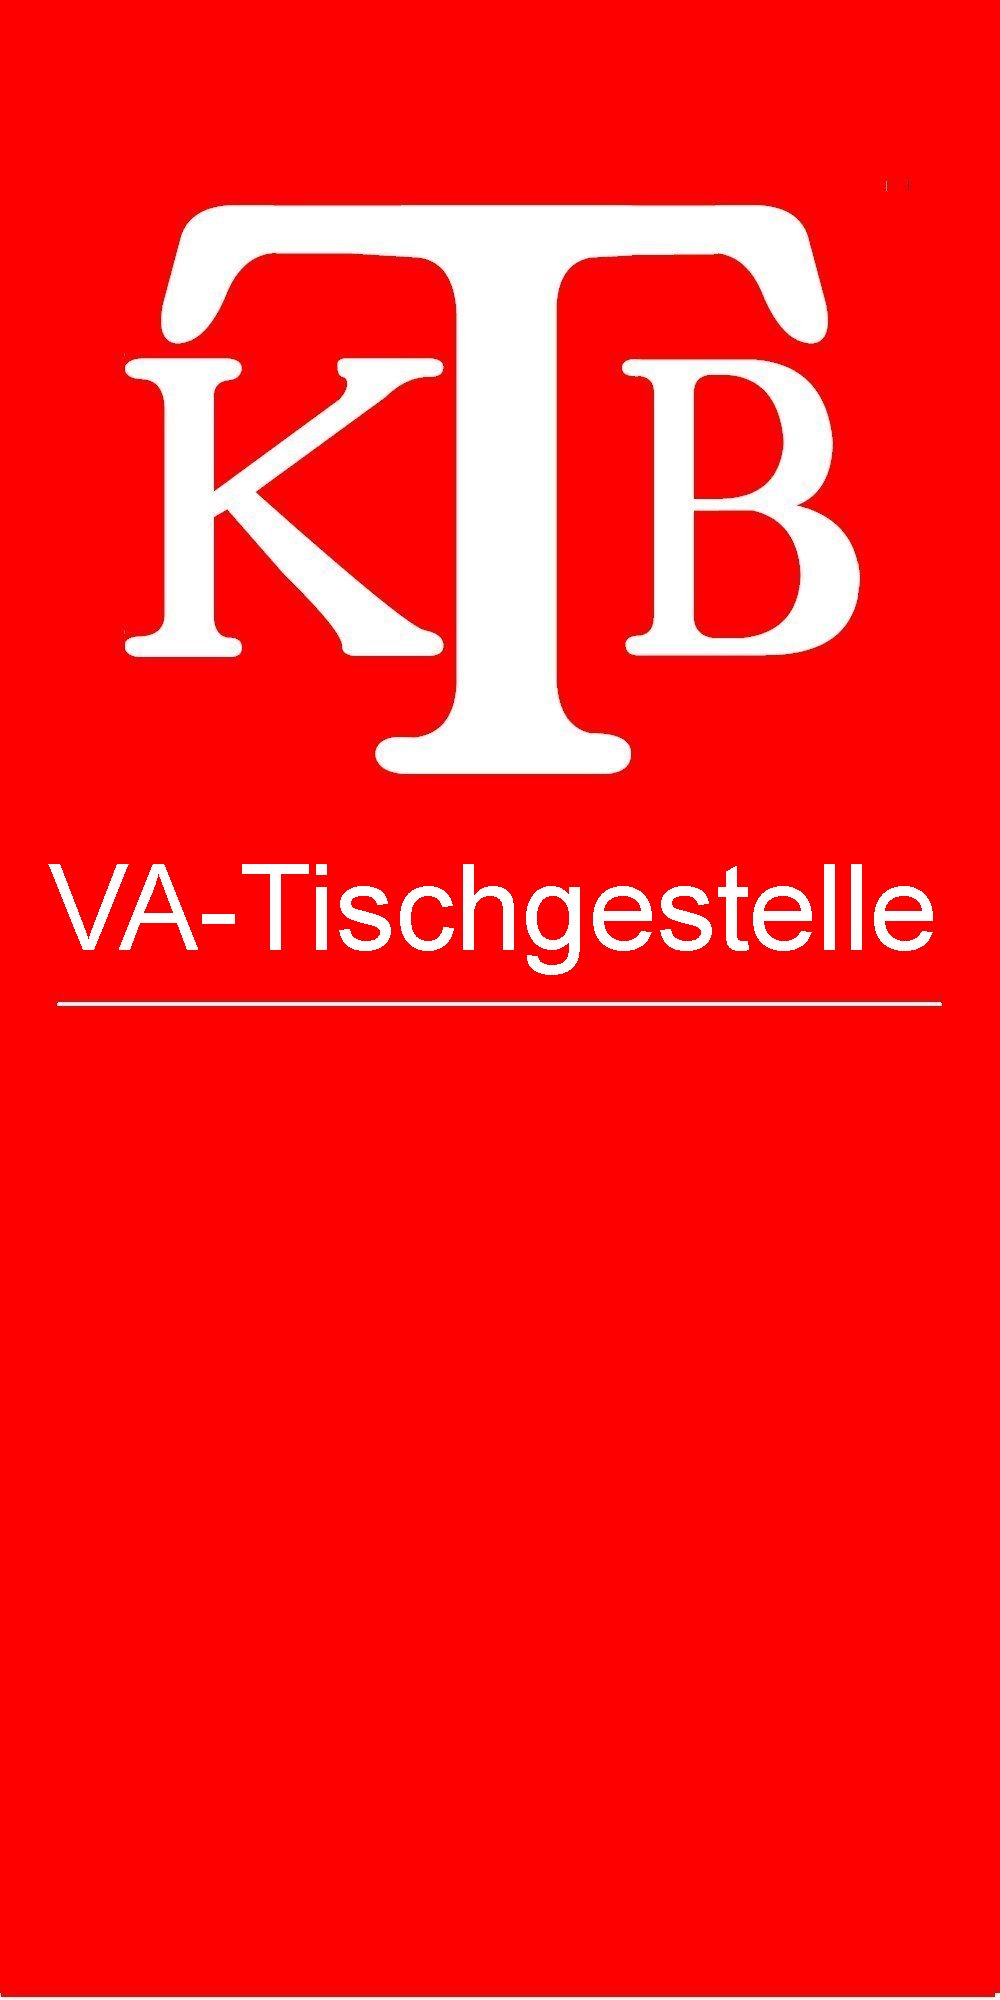 Vatisch, Logo